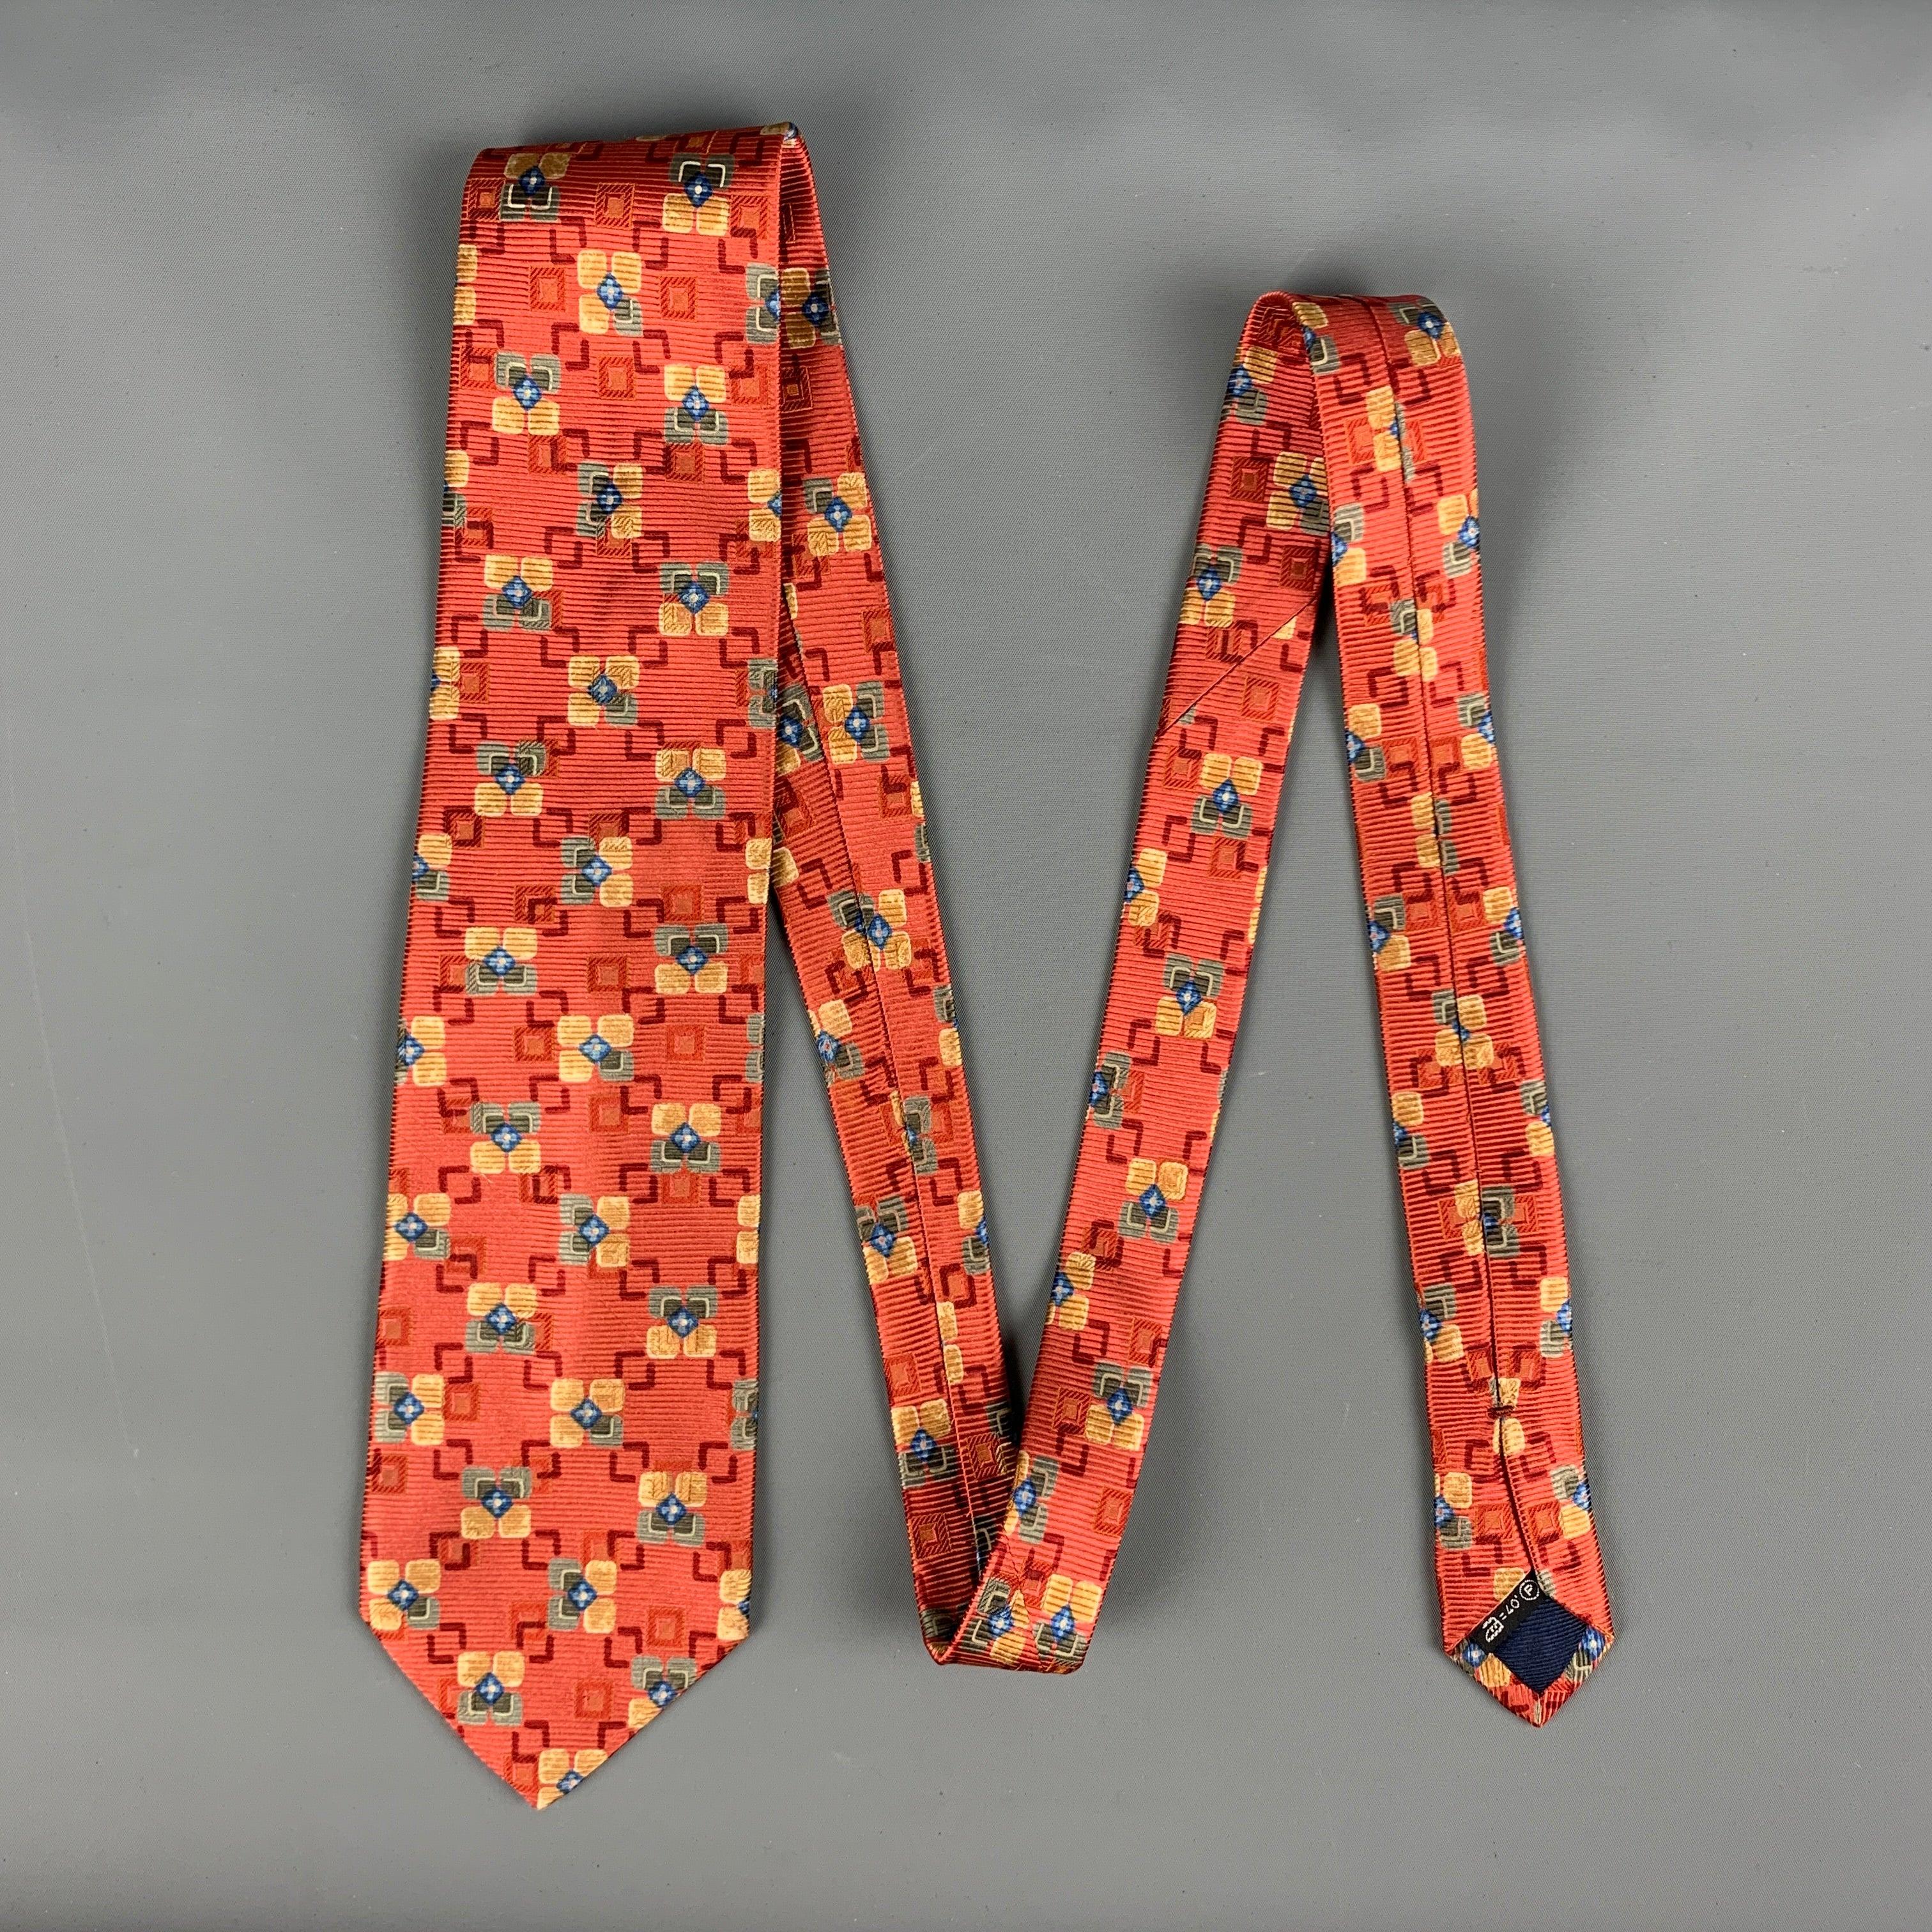 Die rote Krawatte von ERMENEGILDO ZEGNA ist mit einem mehrfarbigen, geometrischen Blumendruck versehen. Hergestellt in Italien.
Sehr guter gebrauchter Zustand
 

Abmessungen: 
  Breite: 3 Zoll Länge: 60 Zoll 

  
  
 
Sui Generis-Referenz: